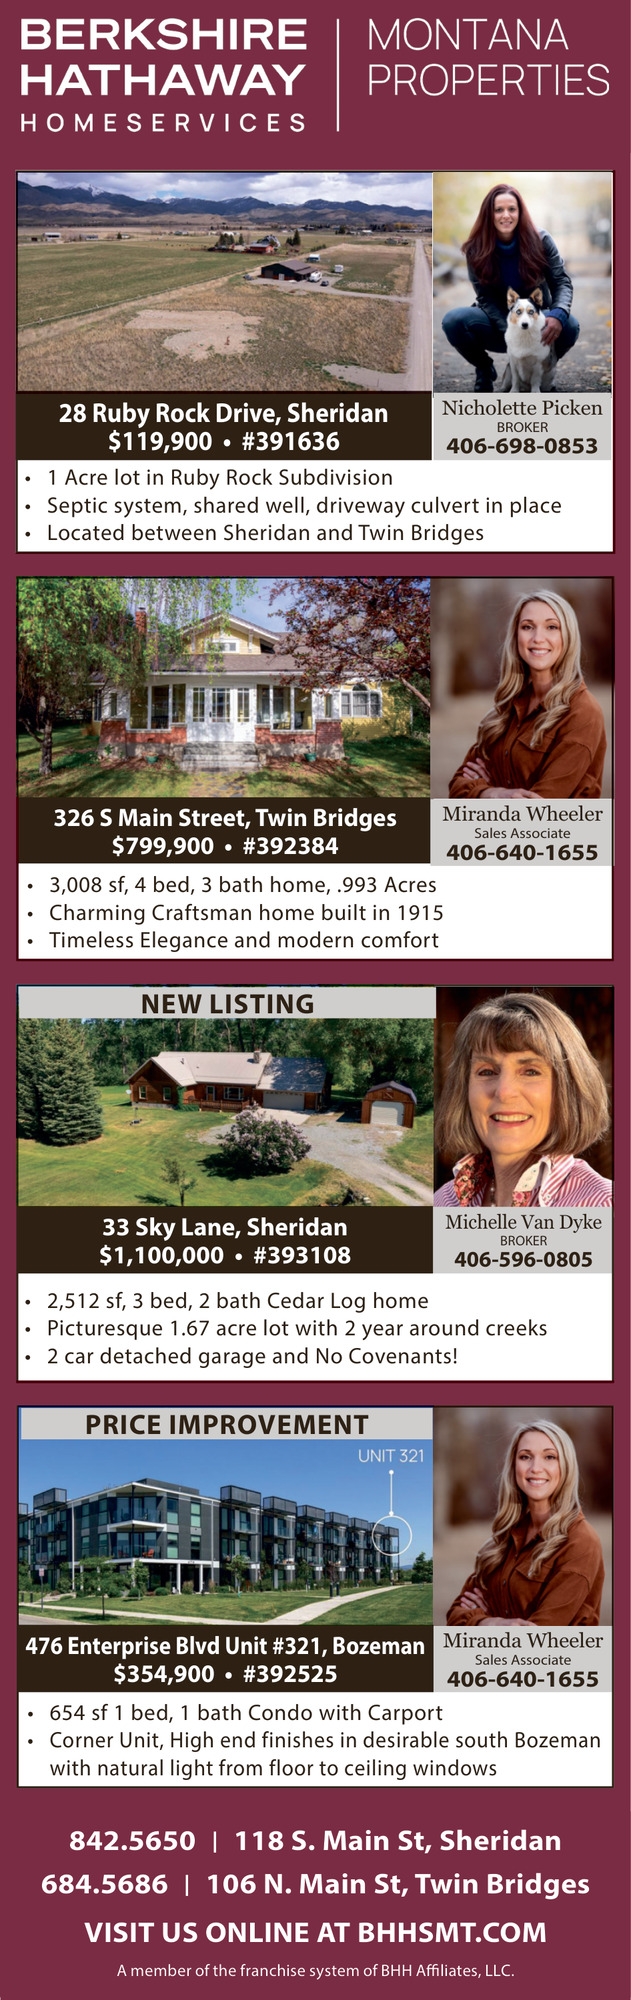 Montana Properties, Michelle Van Dyke / Nicole Picken / Miranda Wheeler - Berkshire Hathaway HomeServices Montana Properties, Twin Bridges, MT